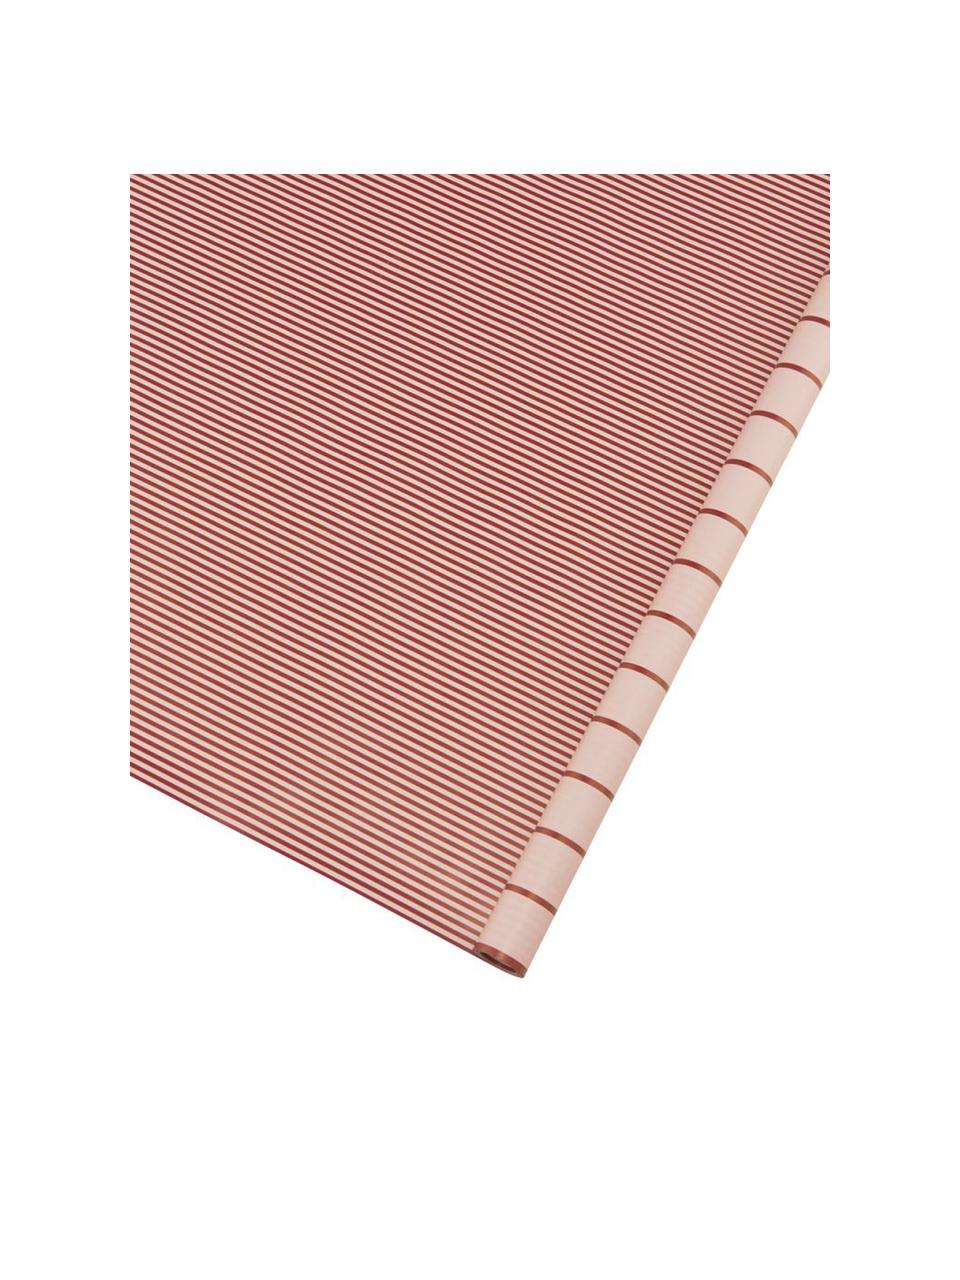 Papier prezentowy Stripey, Papier, Czerwony, różowy, S 50 x D 70 cm